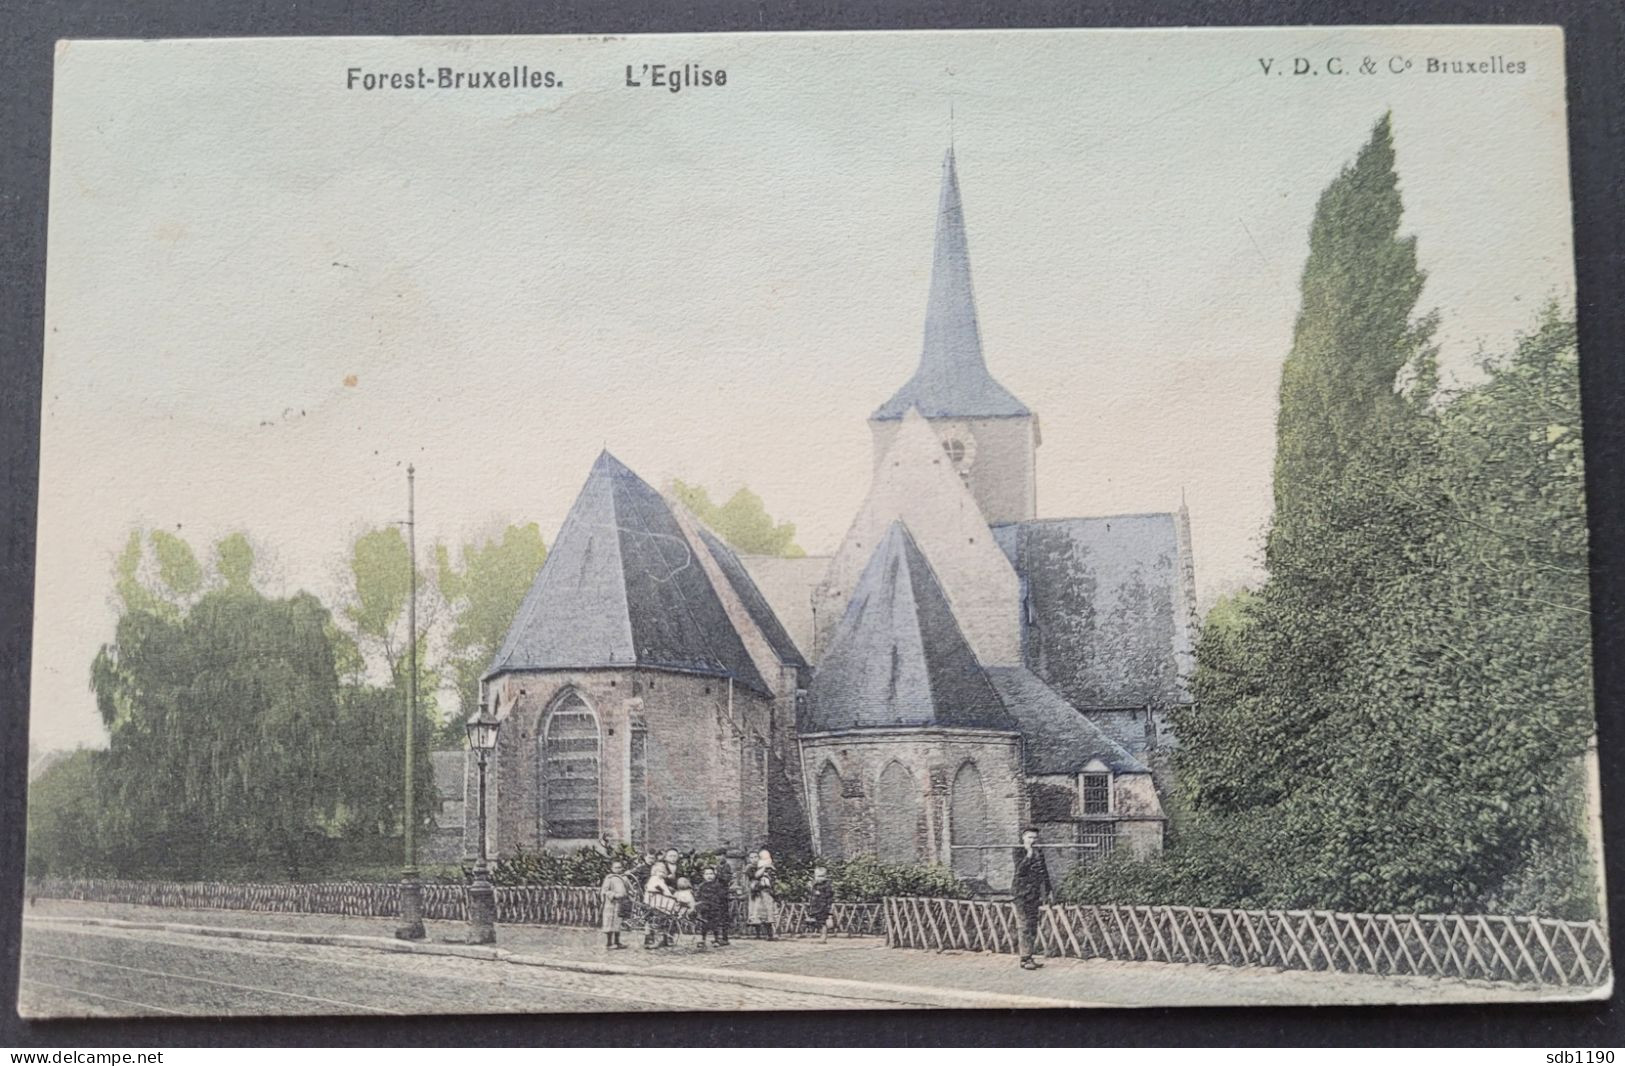 Forest-Bruxelles - L'Eglise (V.D.C. & Co Bruxelles), Colorisée & Circulée 1911 - Forest - Vorst